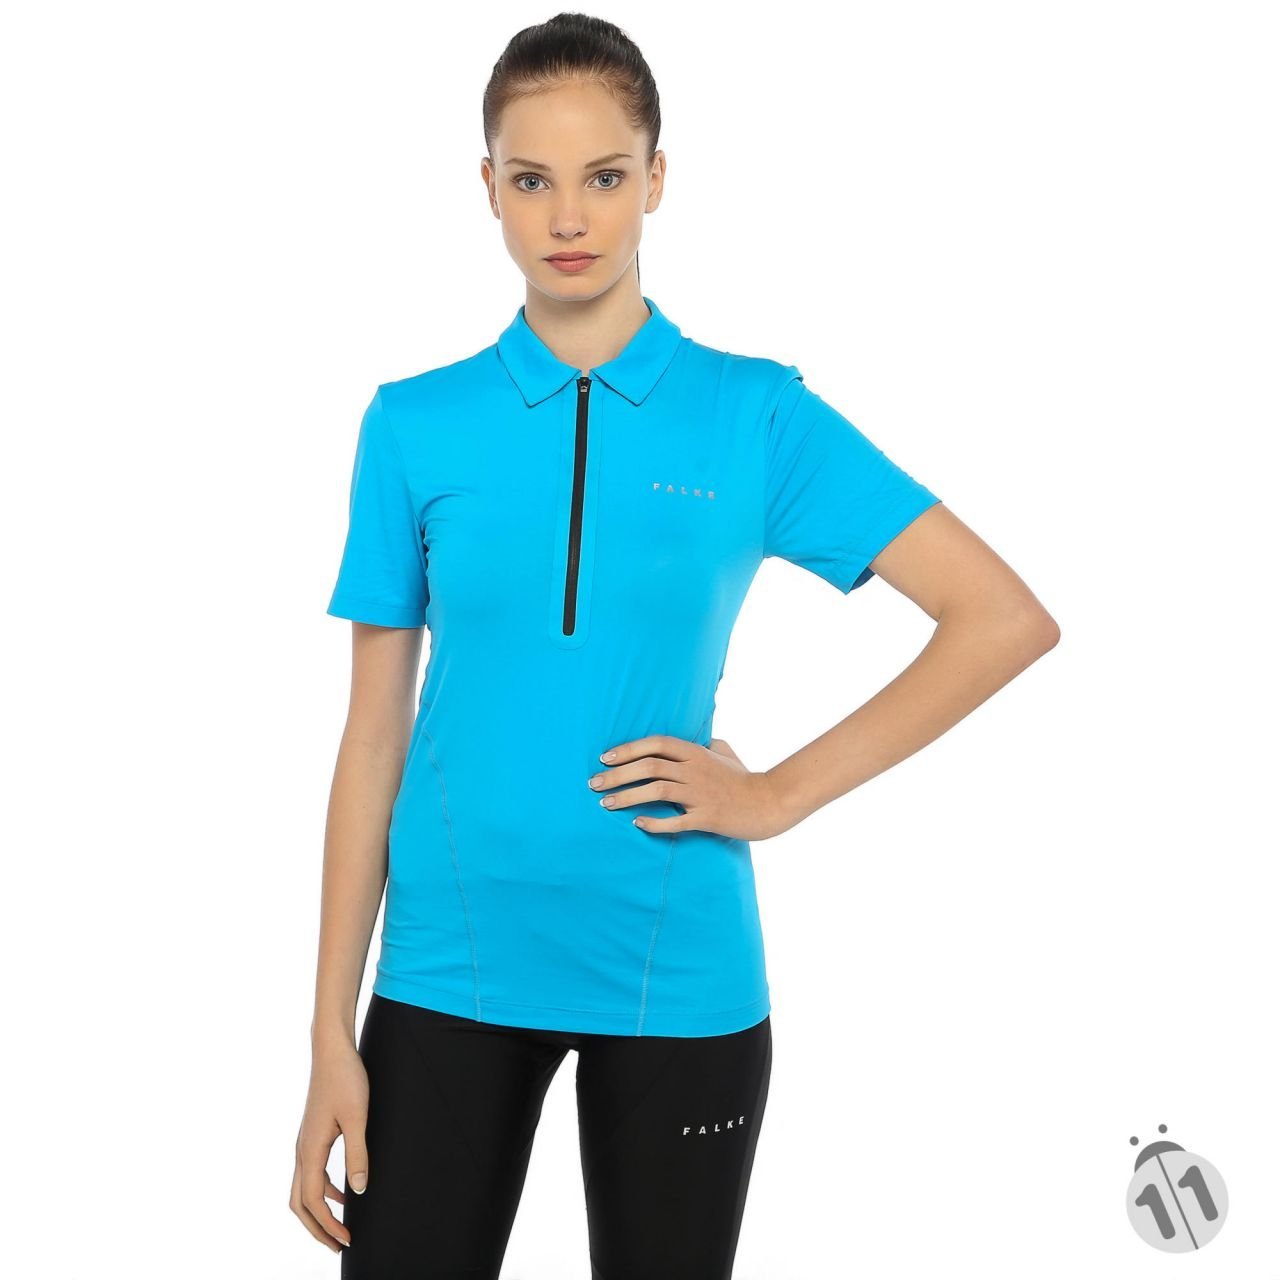 Falke Mavi Yarı Fermuarlı Profesyonel Sporcu Tişört